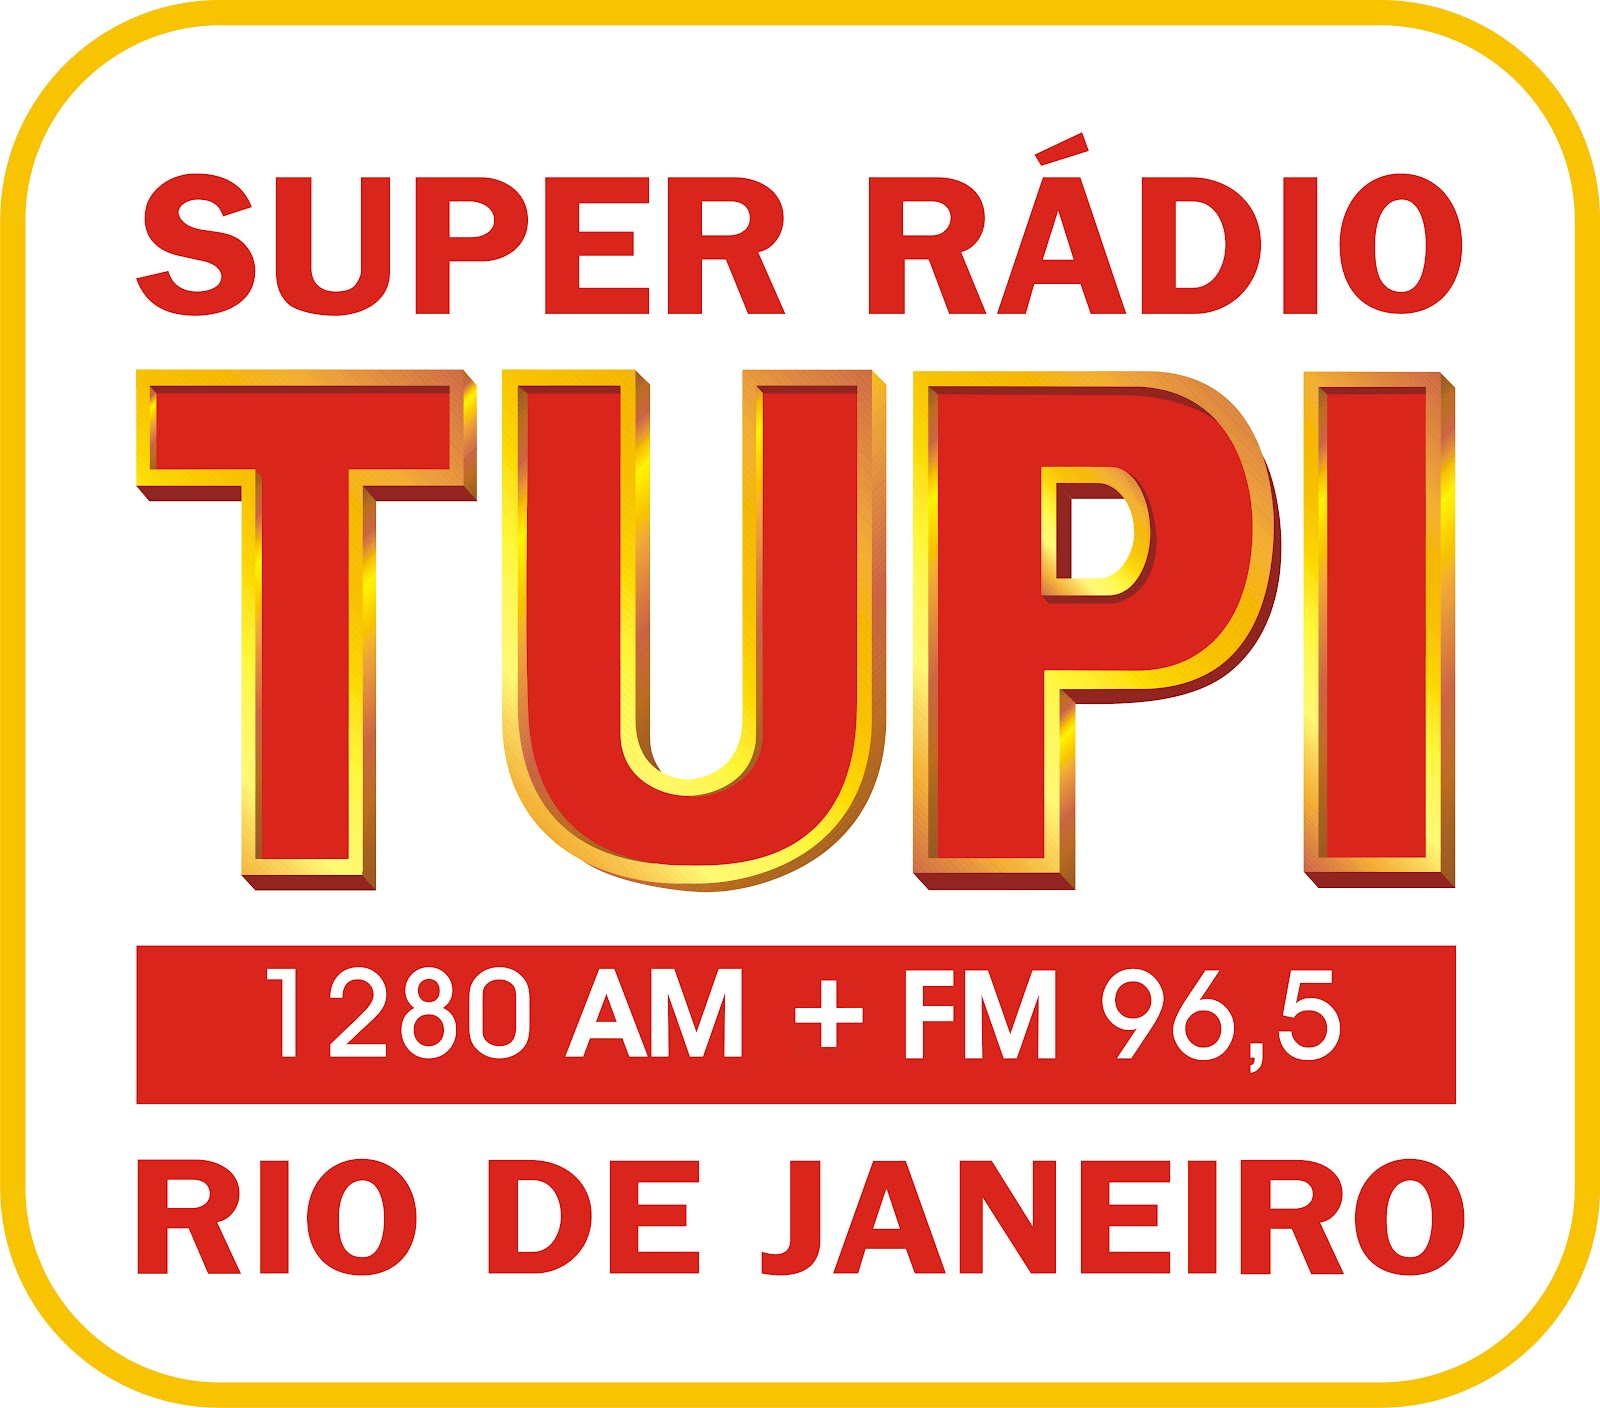 Super Rádio Tupi Segue Dominando A Audiência Popular E Esportiva No Rio De Janeiro 